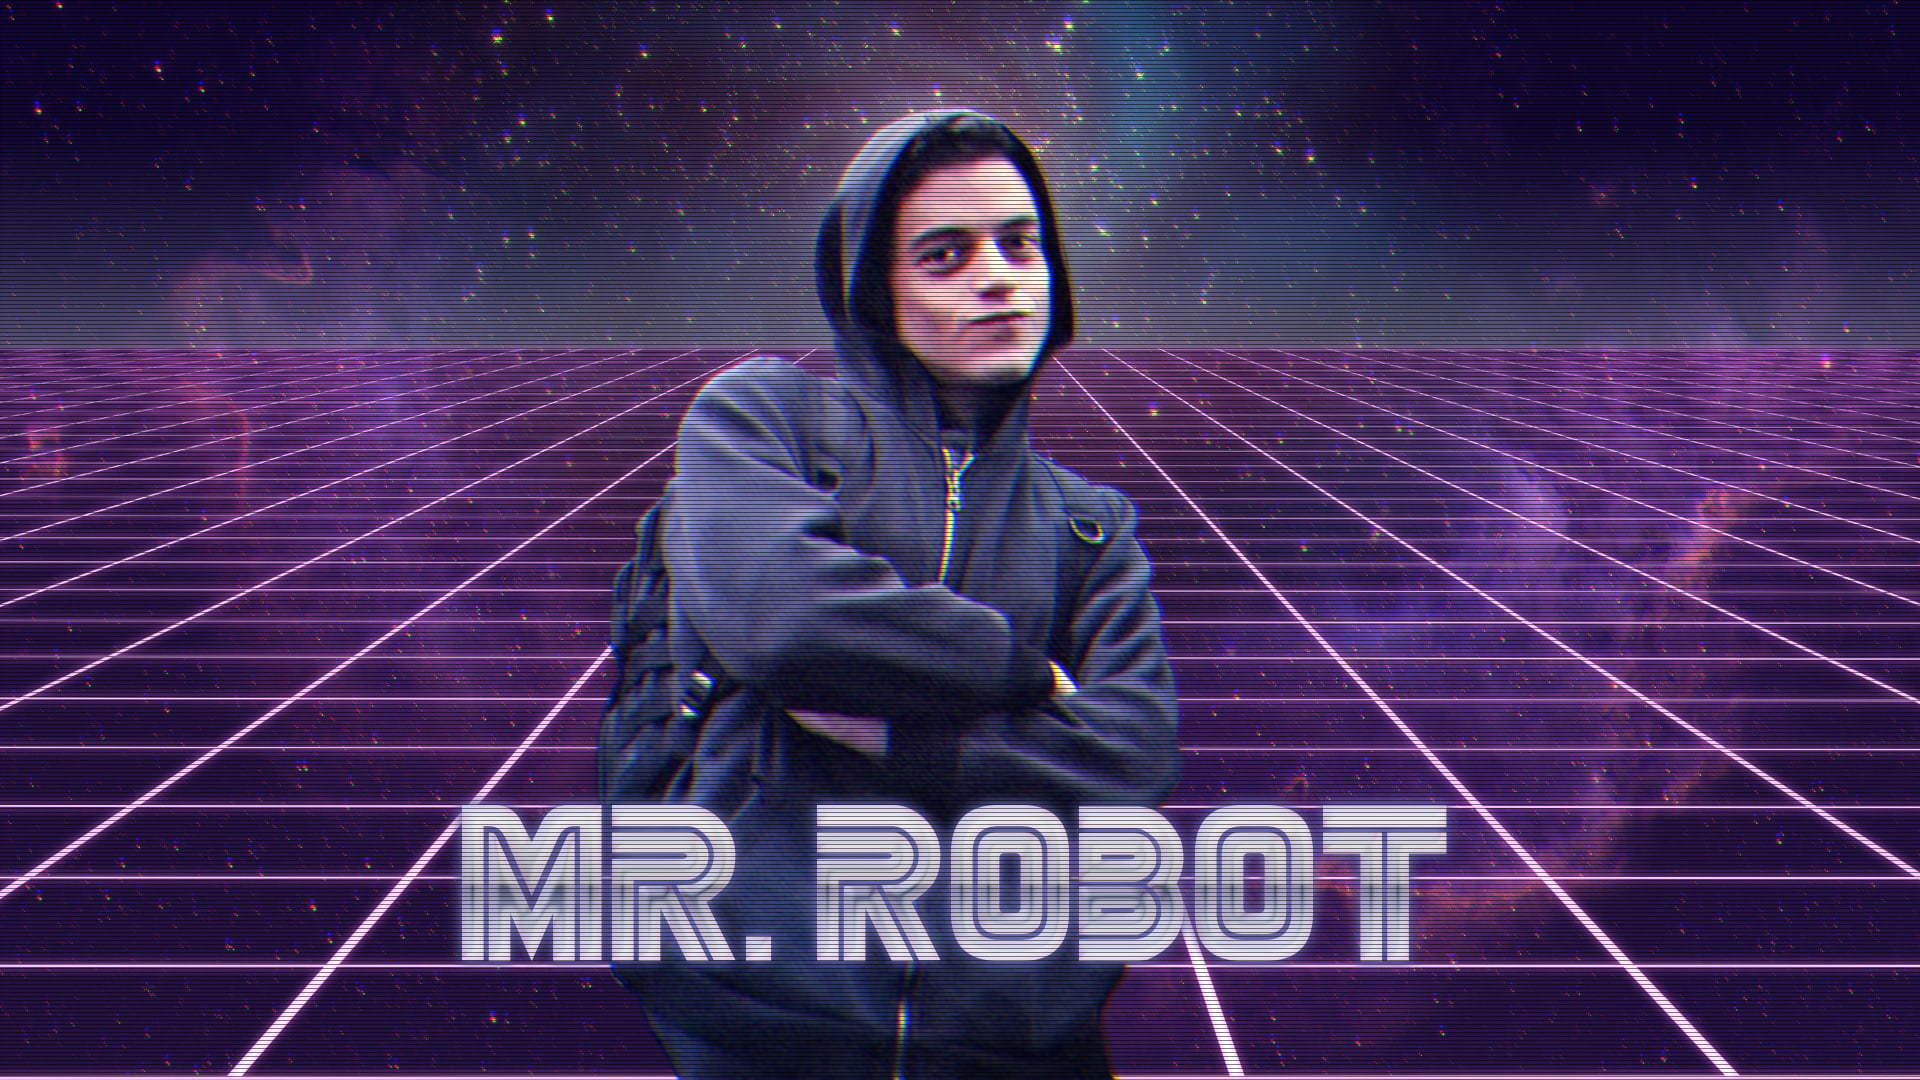 hackerman, Rami Malek, Mr. Robot, hacking, Elliot (Mr. Robot)